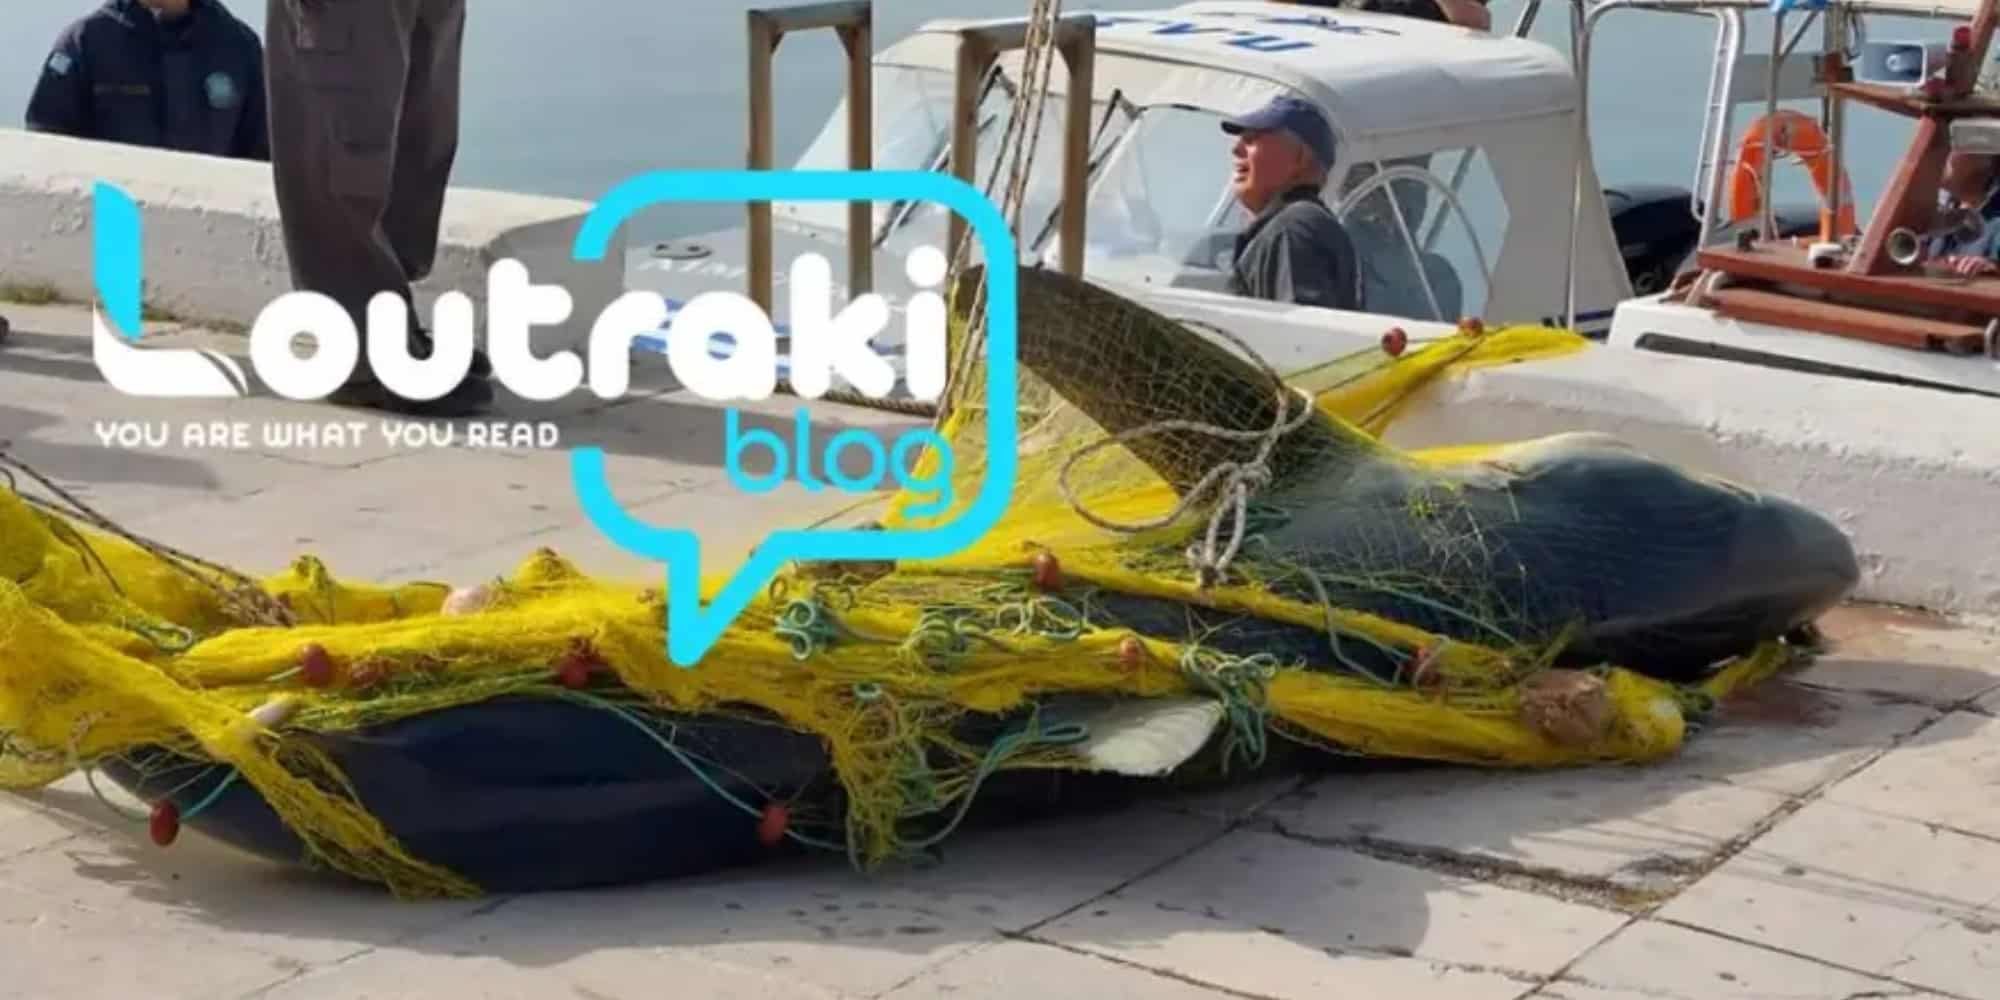 καρχαριας - Καρχαρίας τριών μέτρων πιάστηκε στα δίχτυα ψαρά στο Λουτράκι Κορινθίας (εικόνες & βίντεο)